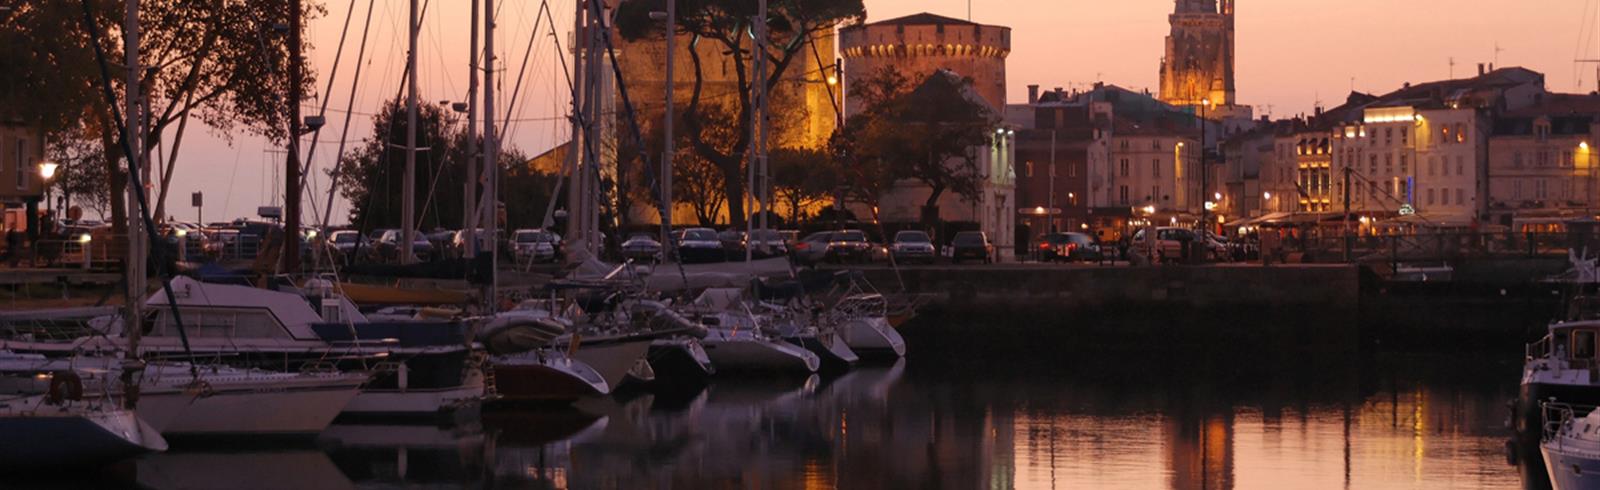 Hafen La Rochelle in der Nähe von Laguna Lodge Résidence am Atlantikküste Frankreich